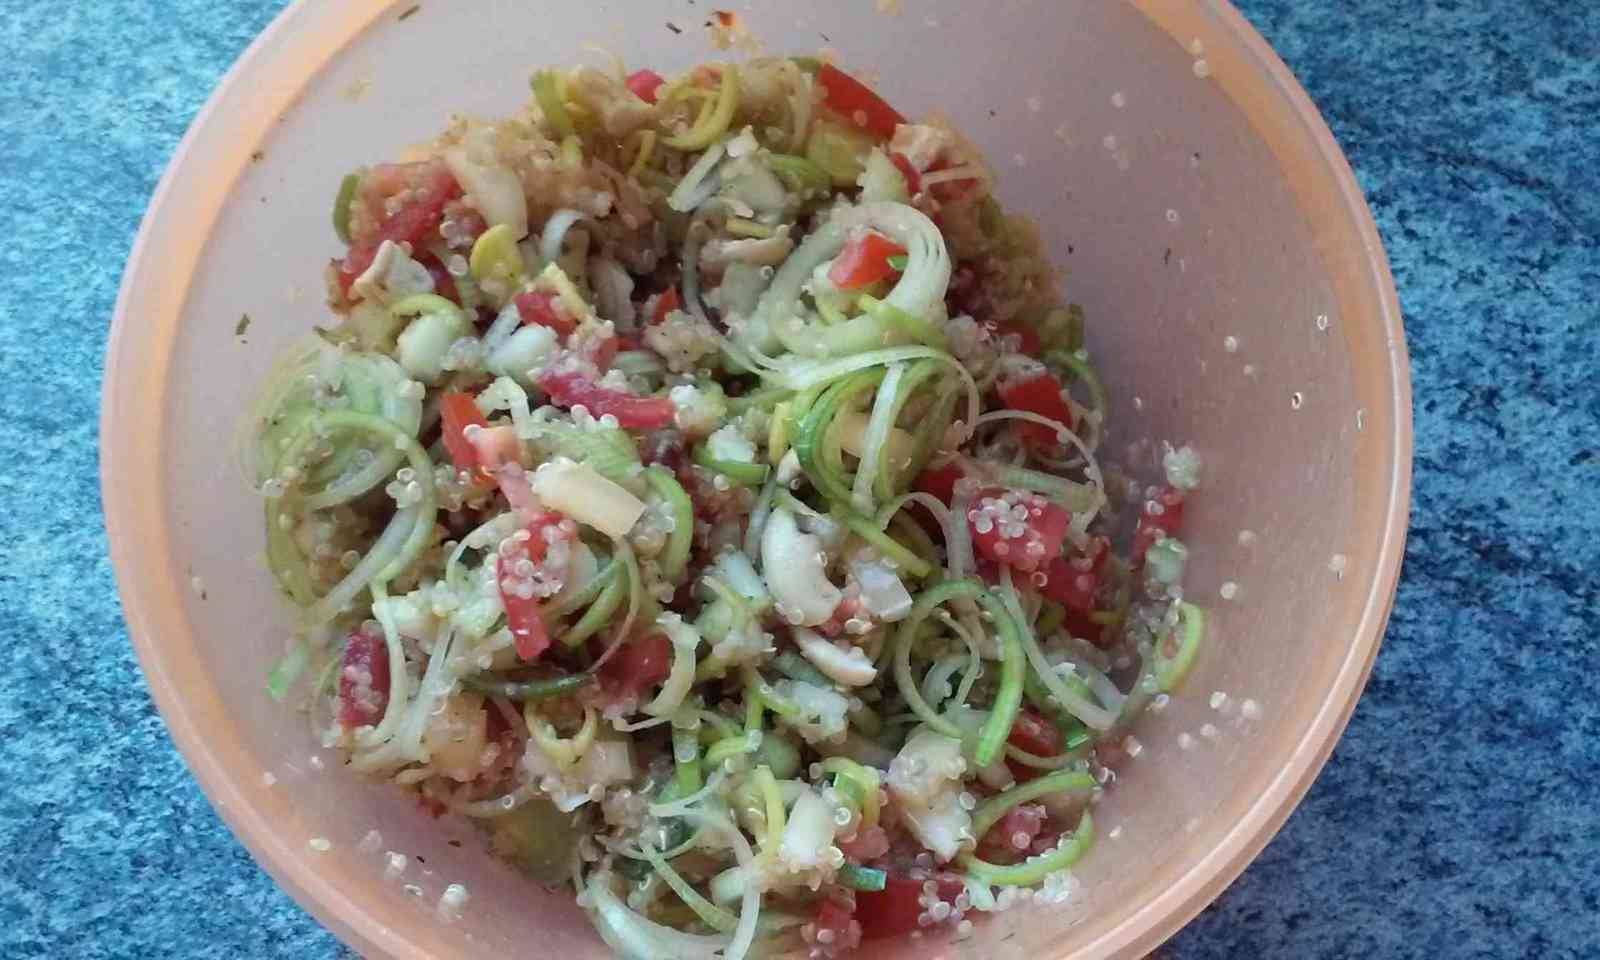 Quinoa-Salat mit Lauch, Tomaten und Paprika